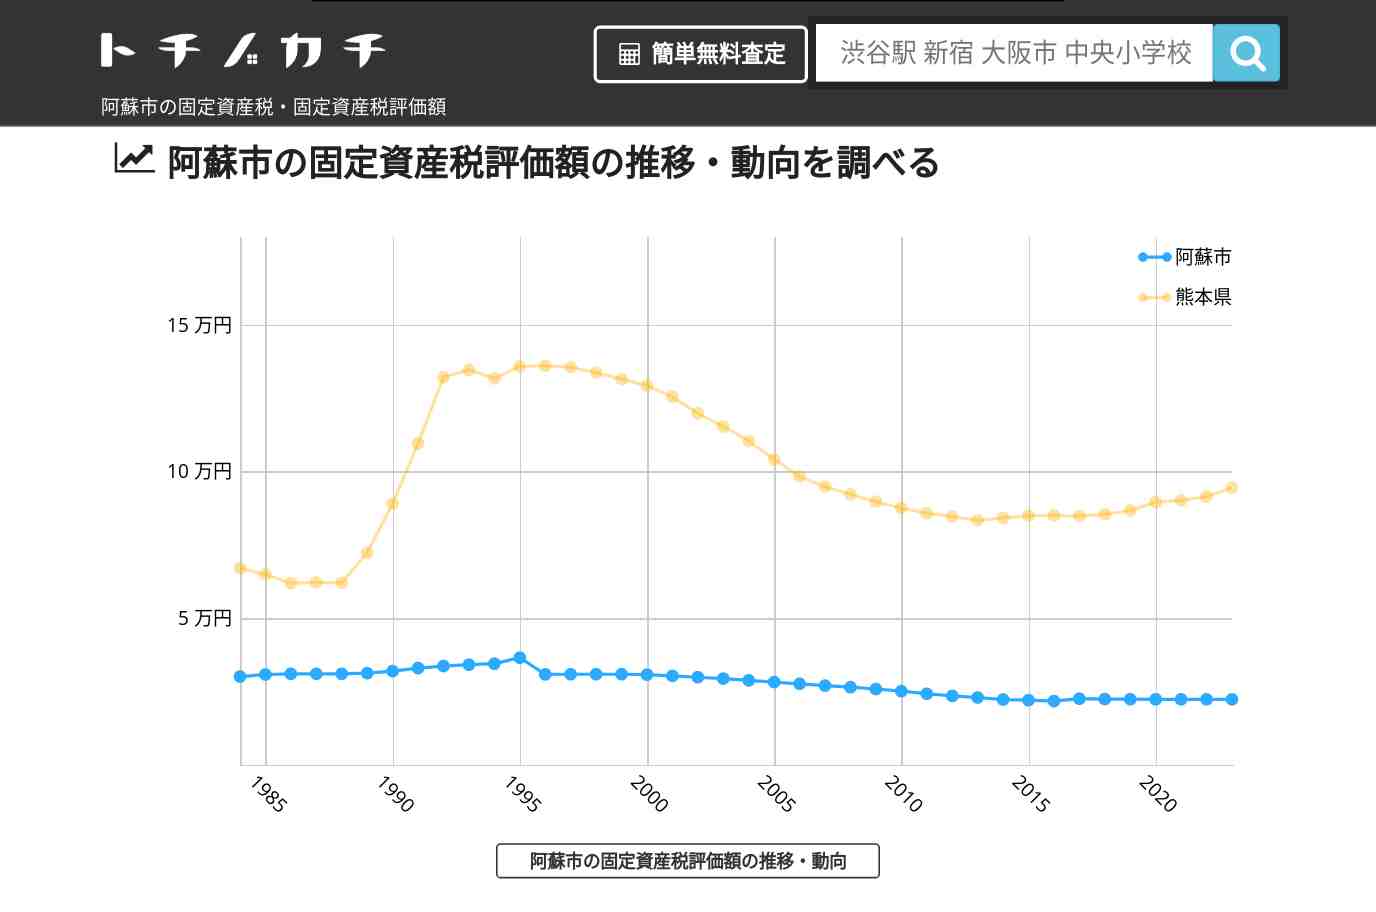 古城小学校(熊本県 阿蘇市)周辺の固定資産税・固定資産税評価額 | トチノカチ